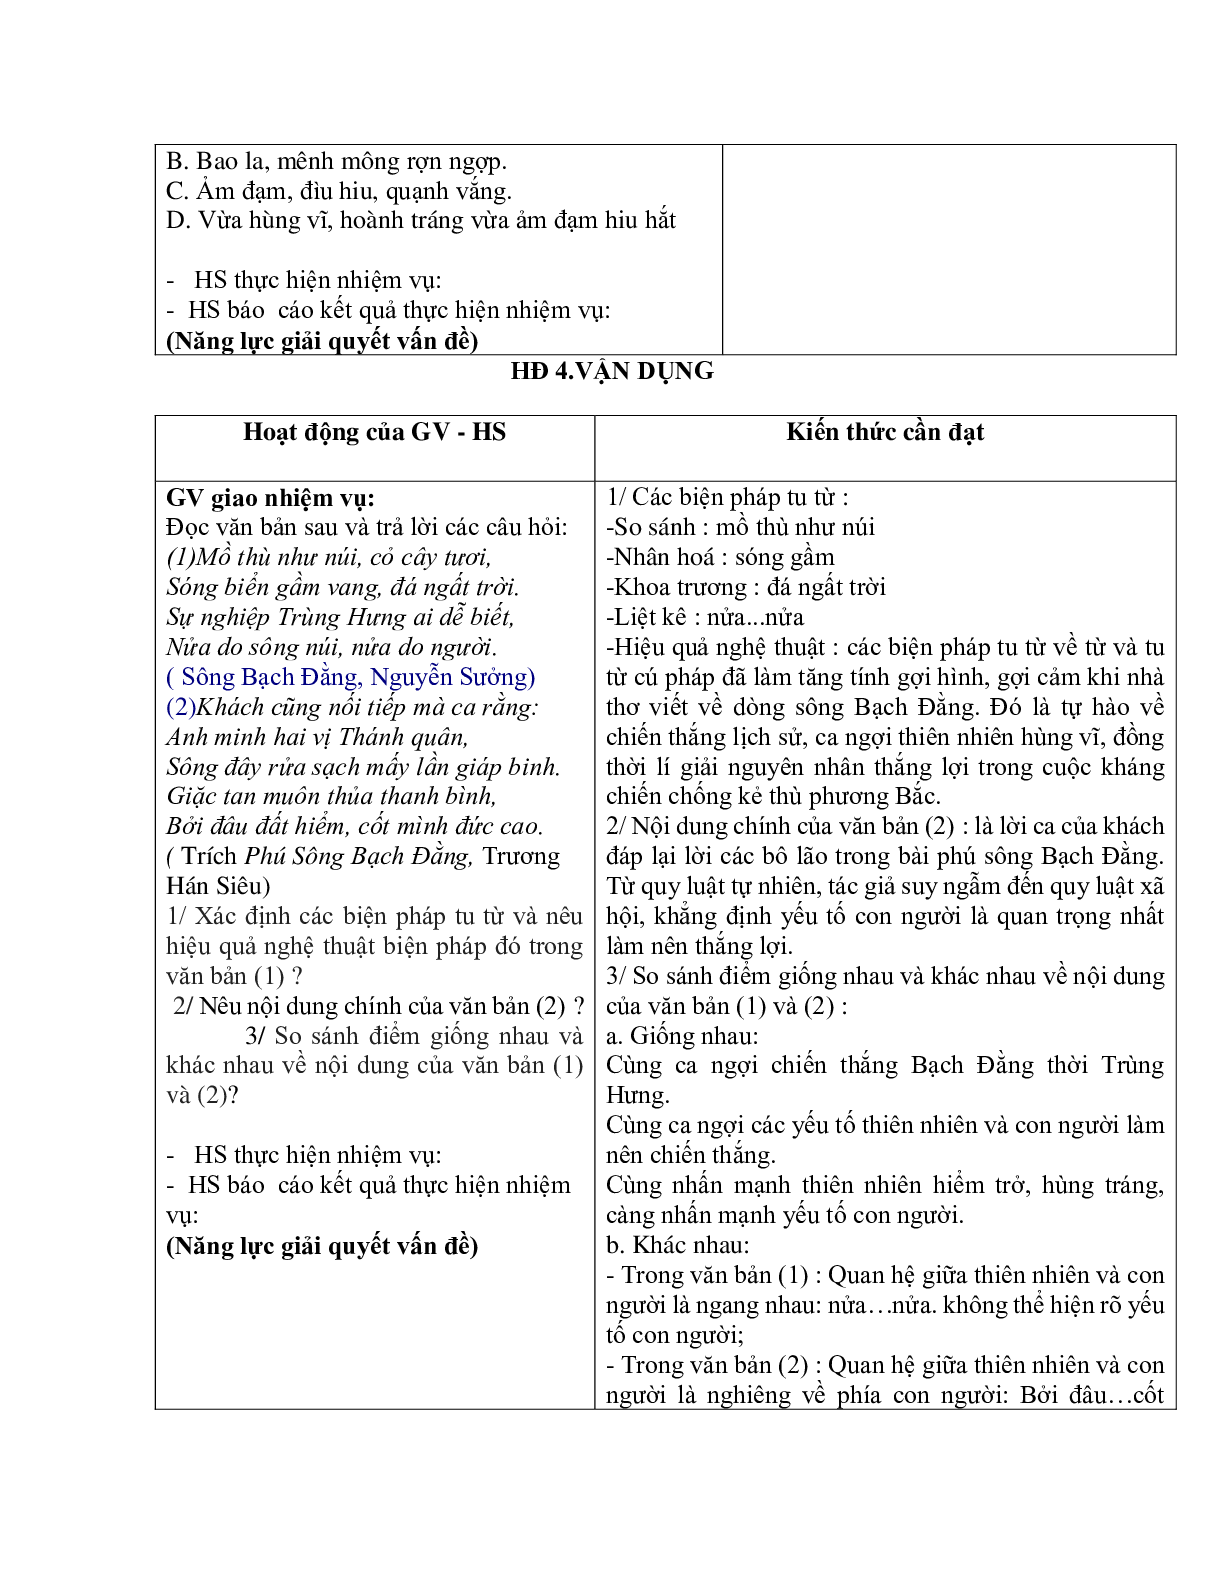 Giáo án ngữ văn lớp 10 Tiết 56, 57: Phú sông Bạch Đằng (trang 9)